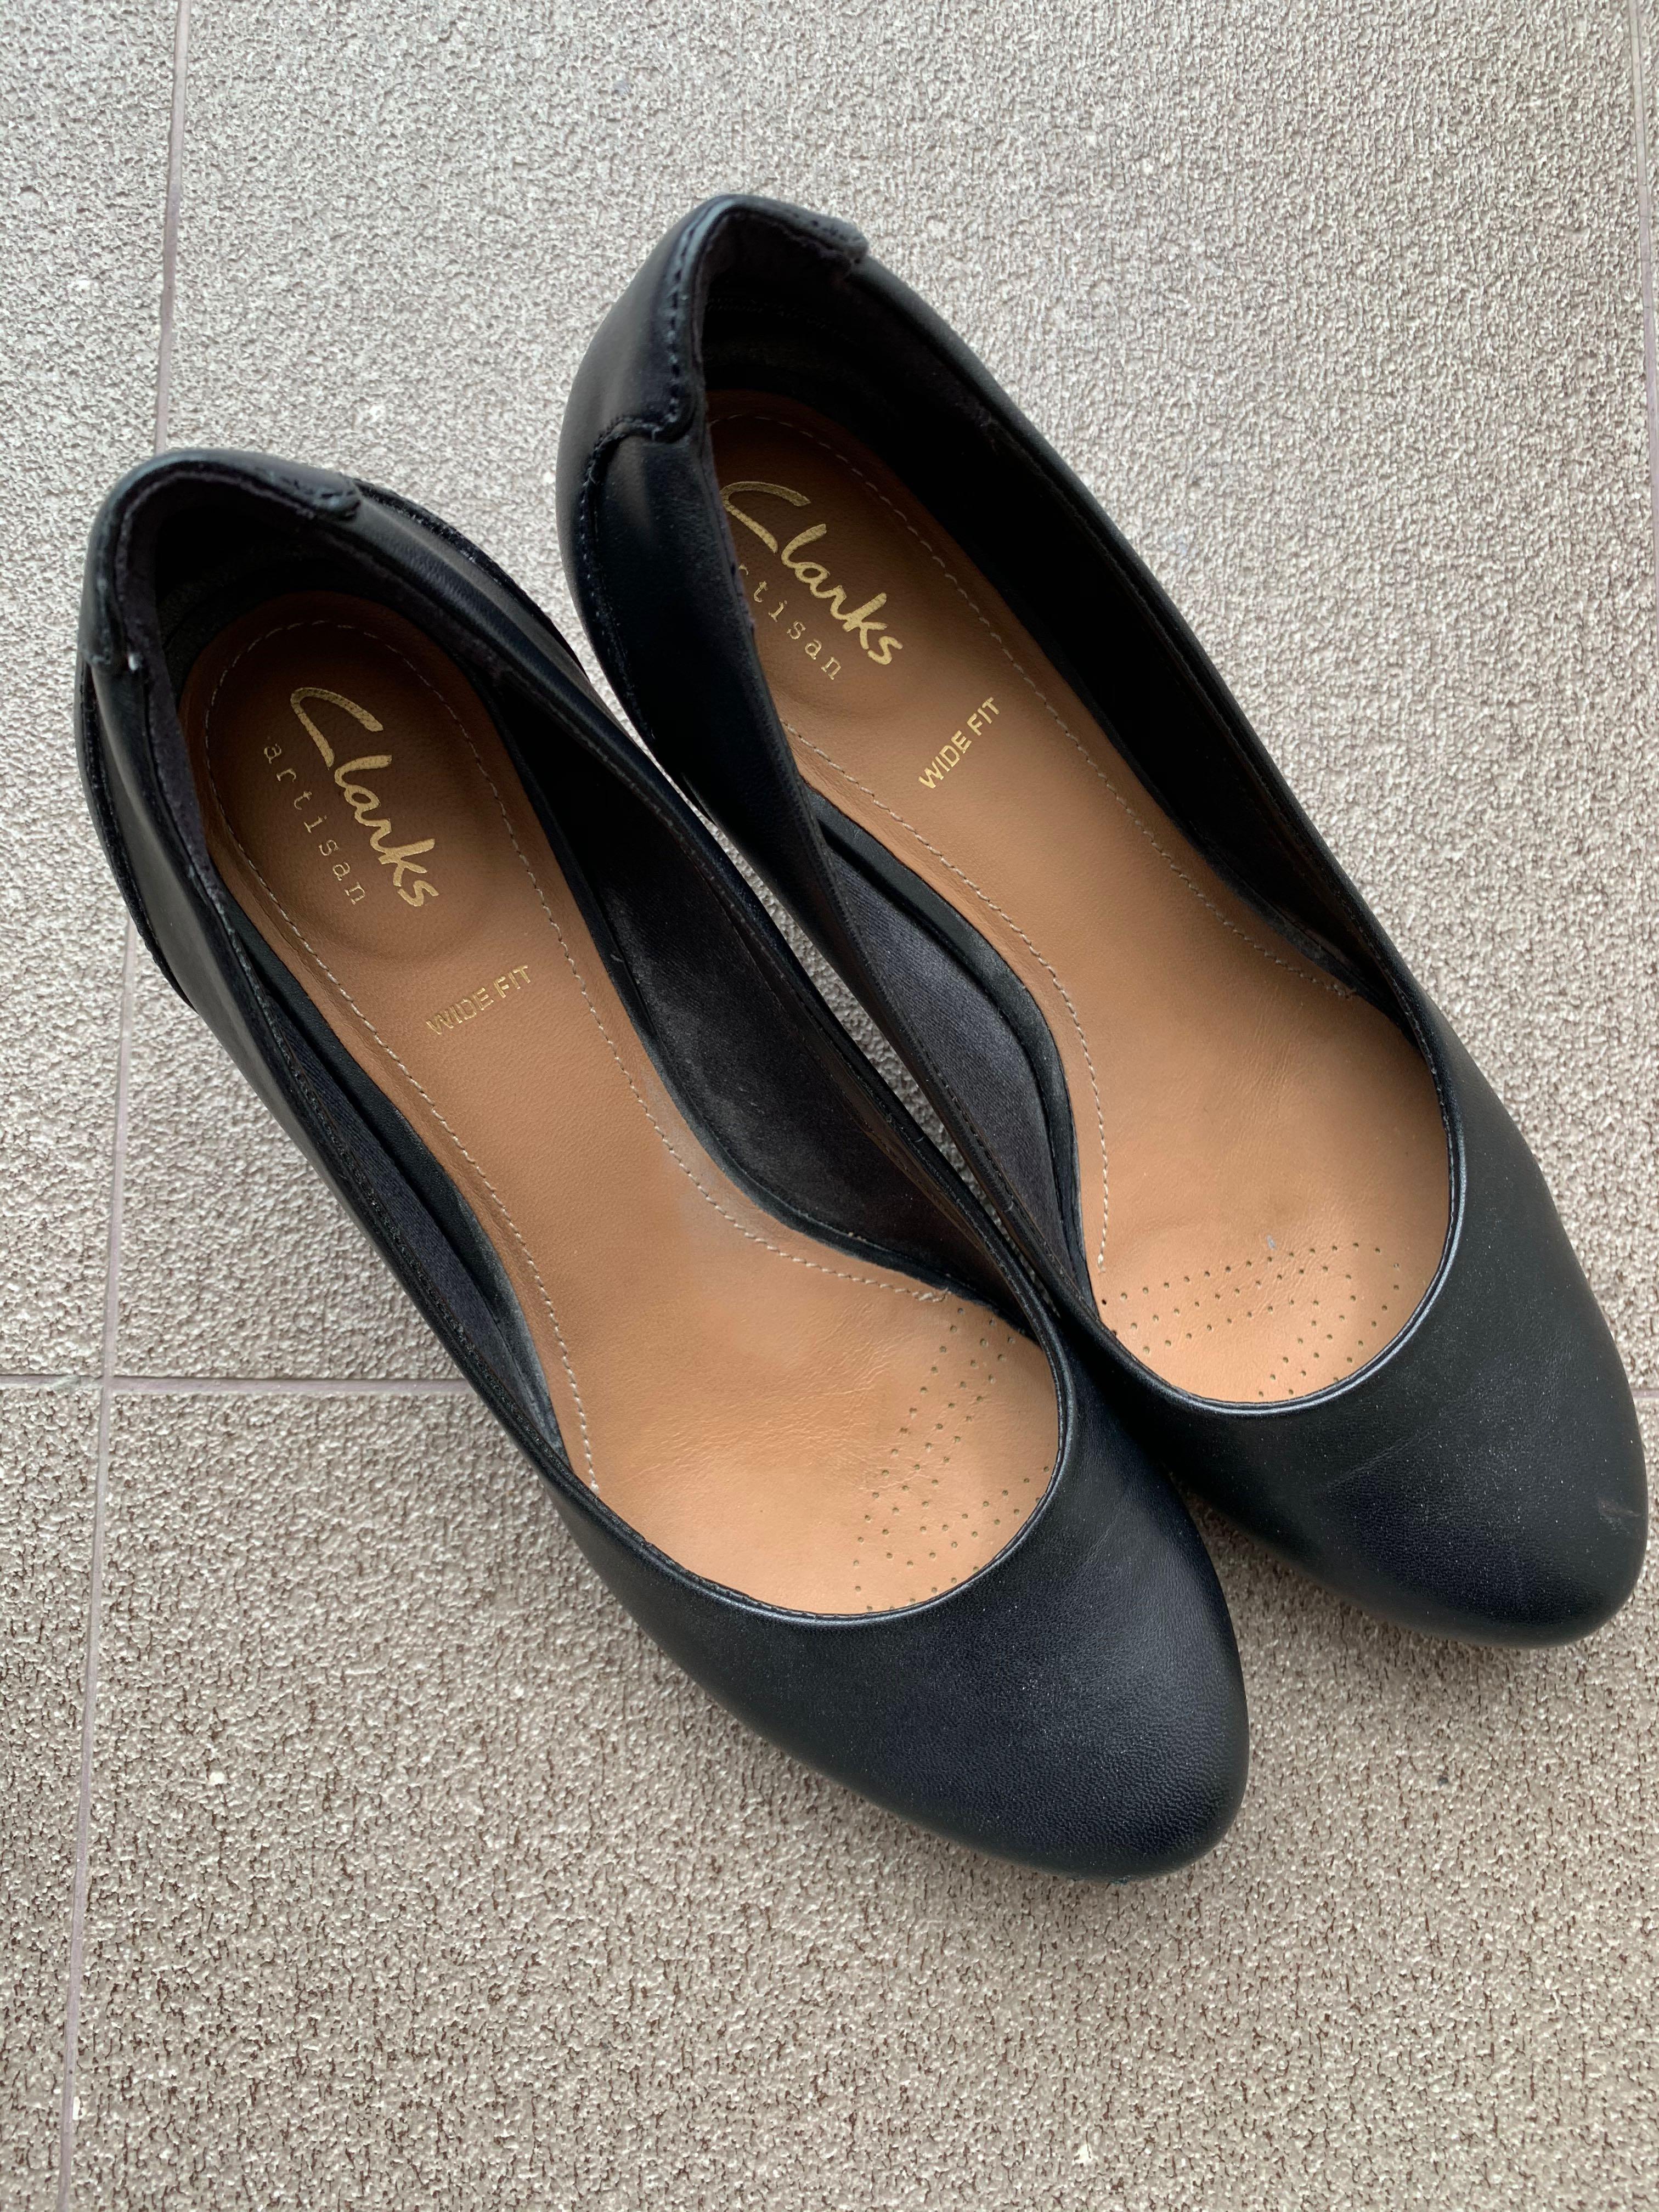 🔥Fire Sale! Clarks Black heels , Women 